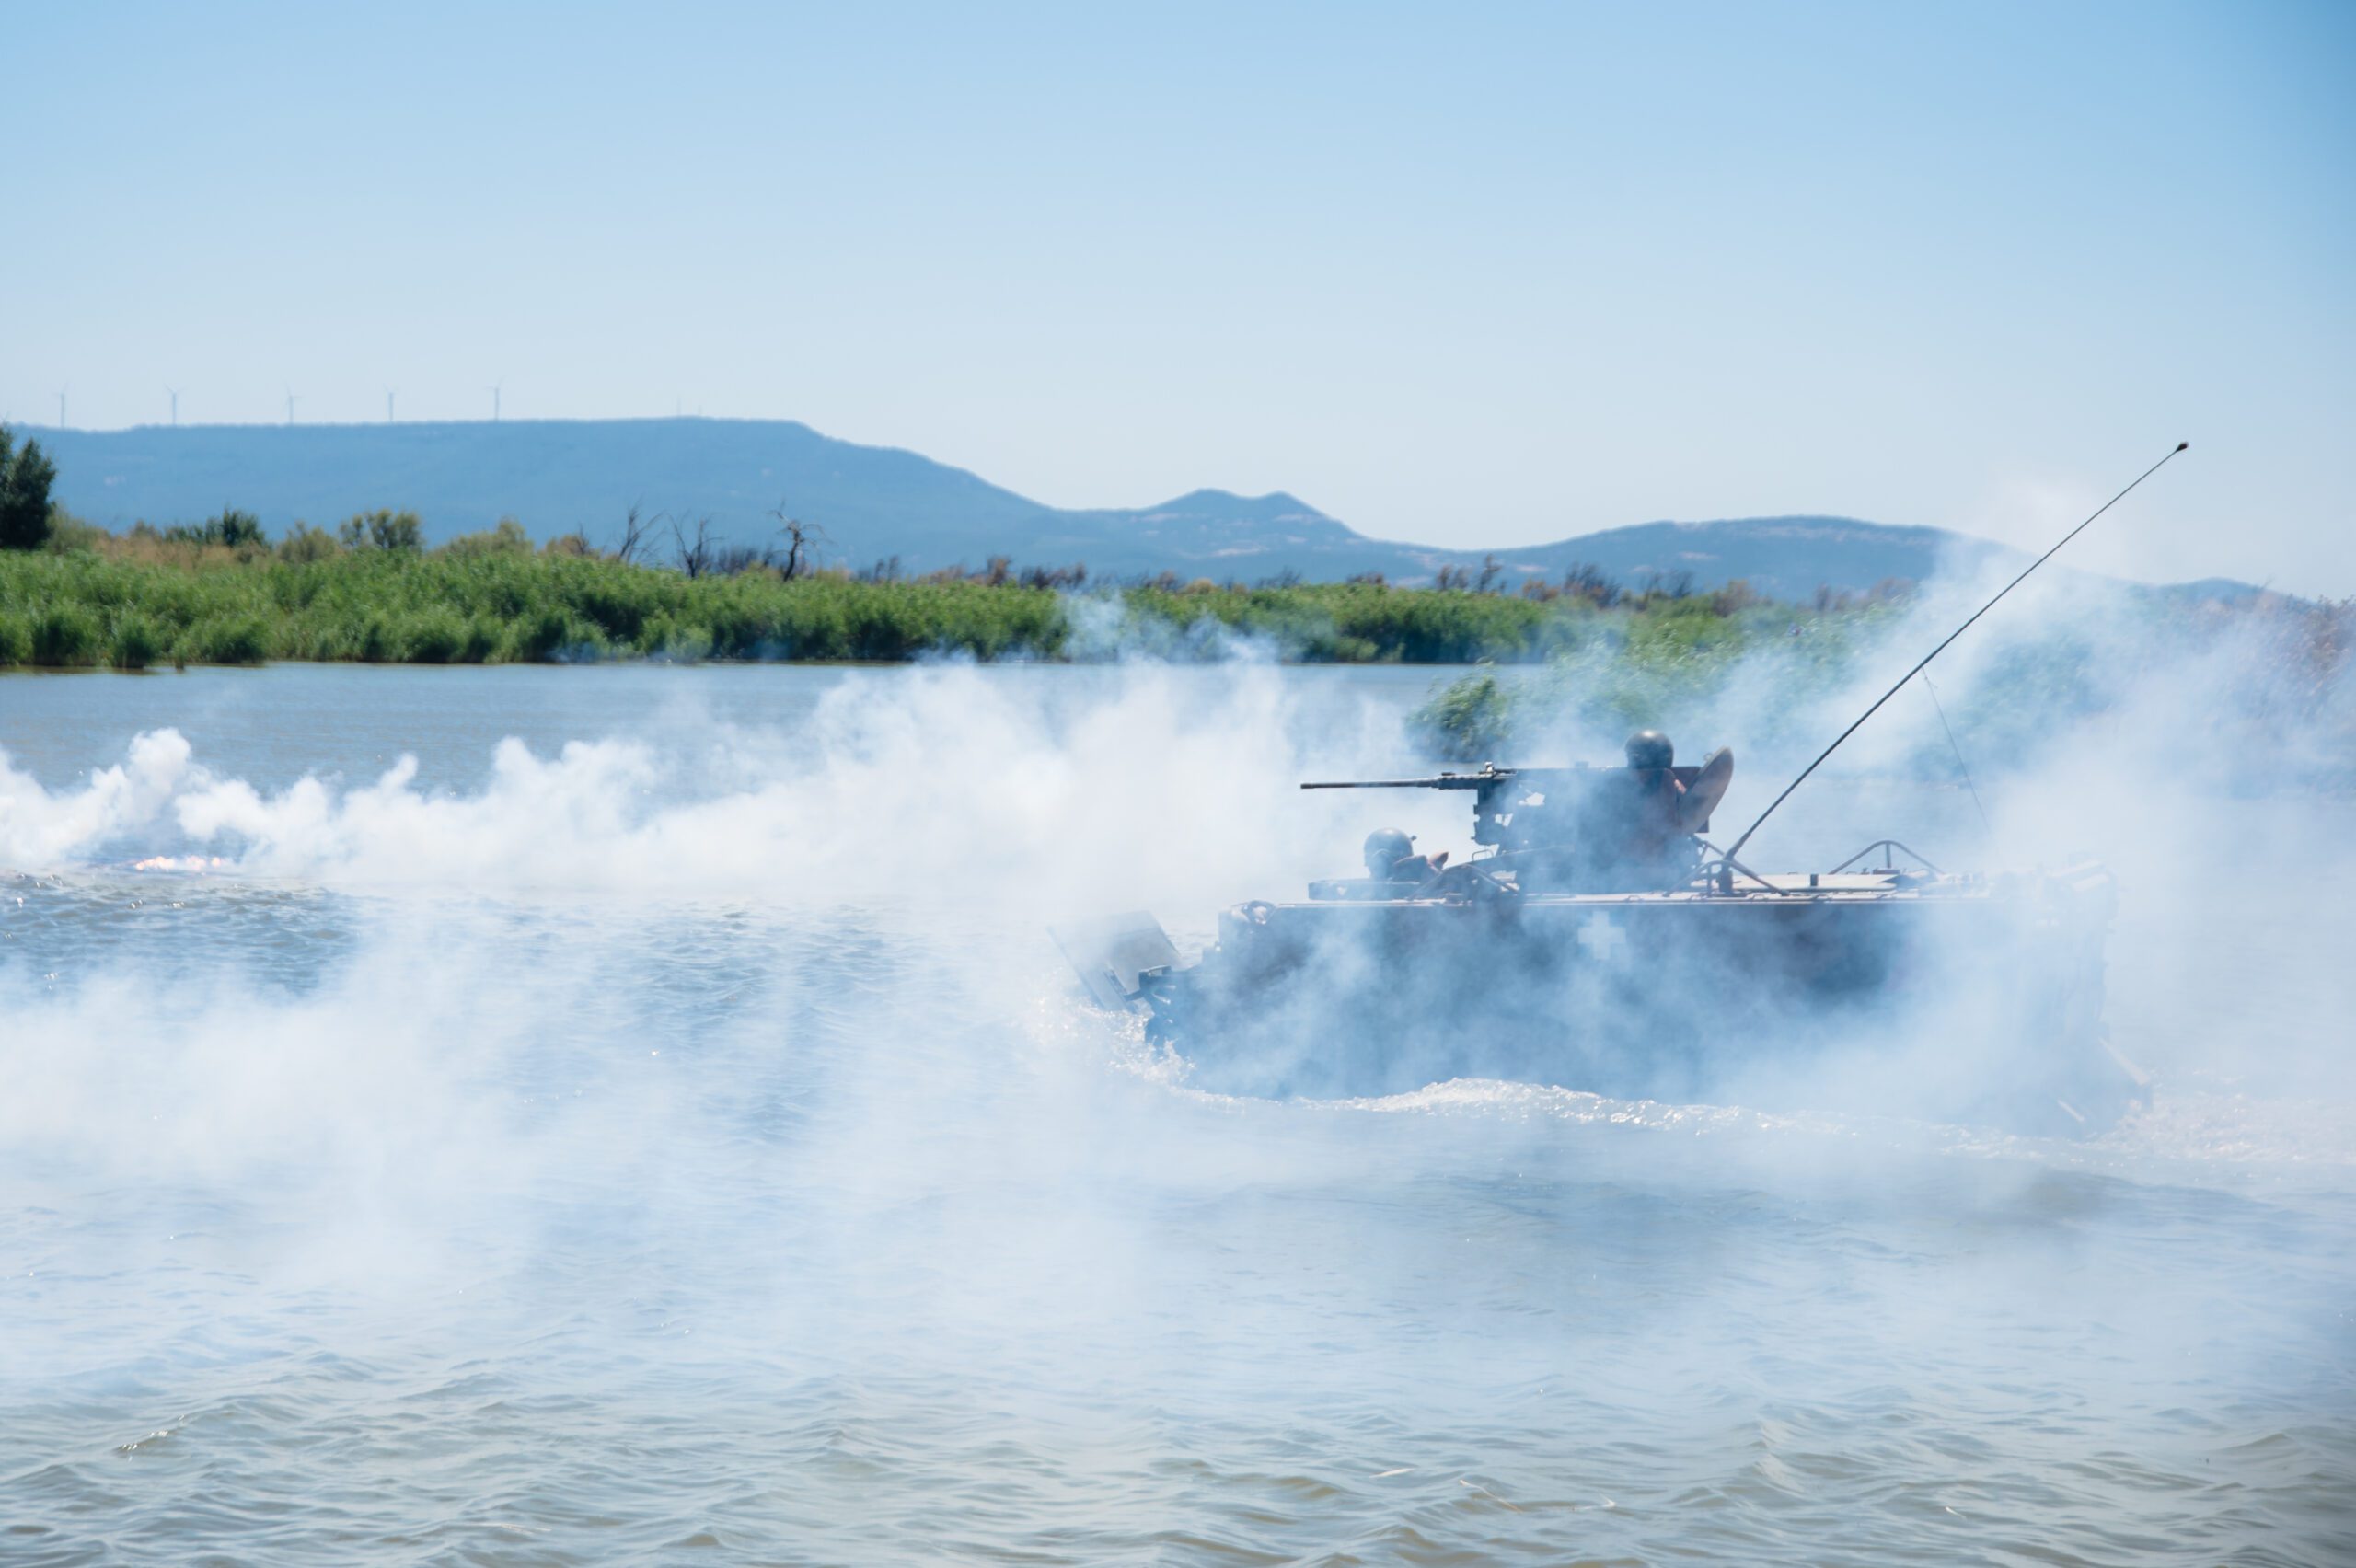 Έβρος: Έτσι θα περάσουν το ποτάμι τα ελληνικά άρματα αν χρειαστεί - Με το στόμα ανοιχτό οι Αμερικανοί